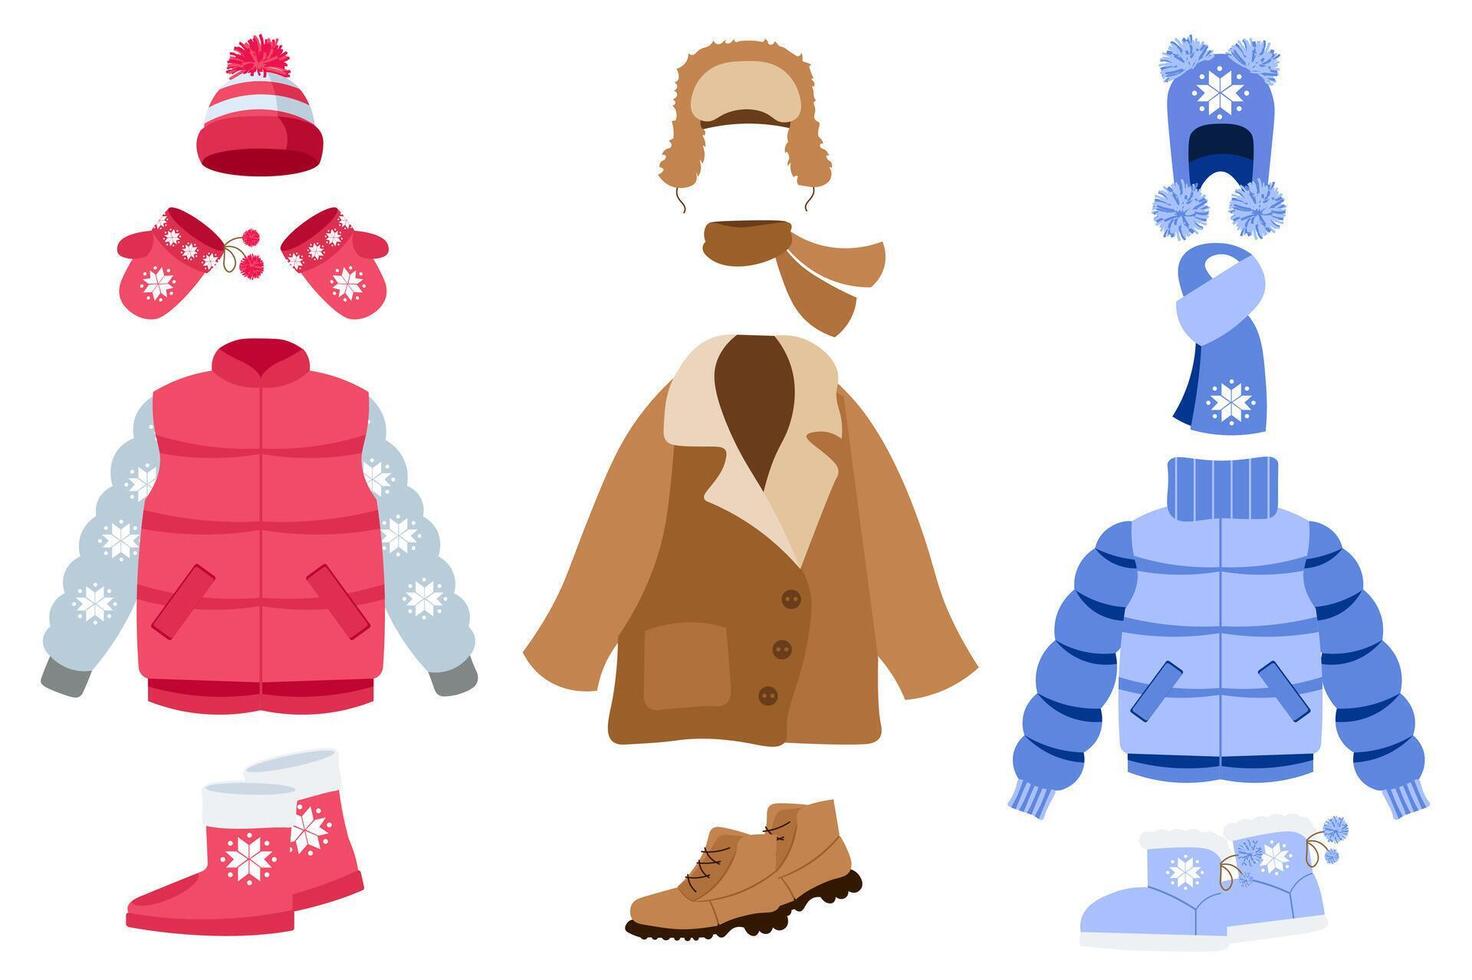 värma vinter- kläder mega uppsättning element i platt design. bunt av annorlunda täcka och jackor med snöflinga prydnad, vantar, hattar och halsdukar, stövlar. vektor illustration isolerat grafisk objekt